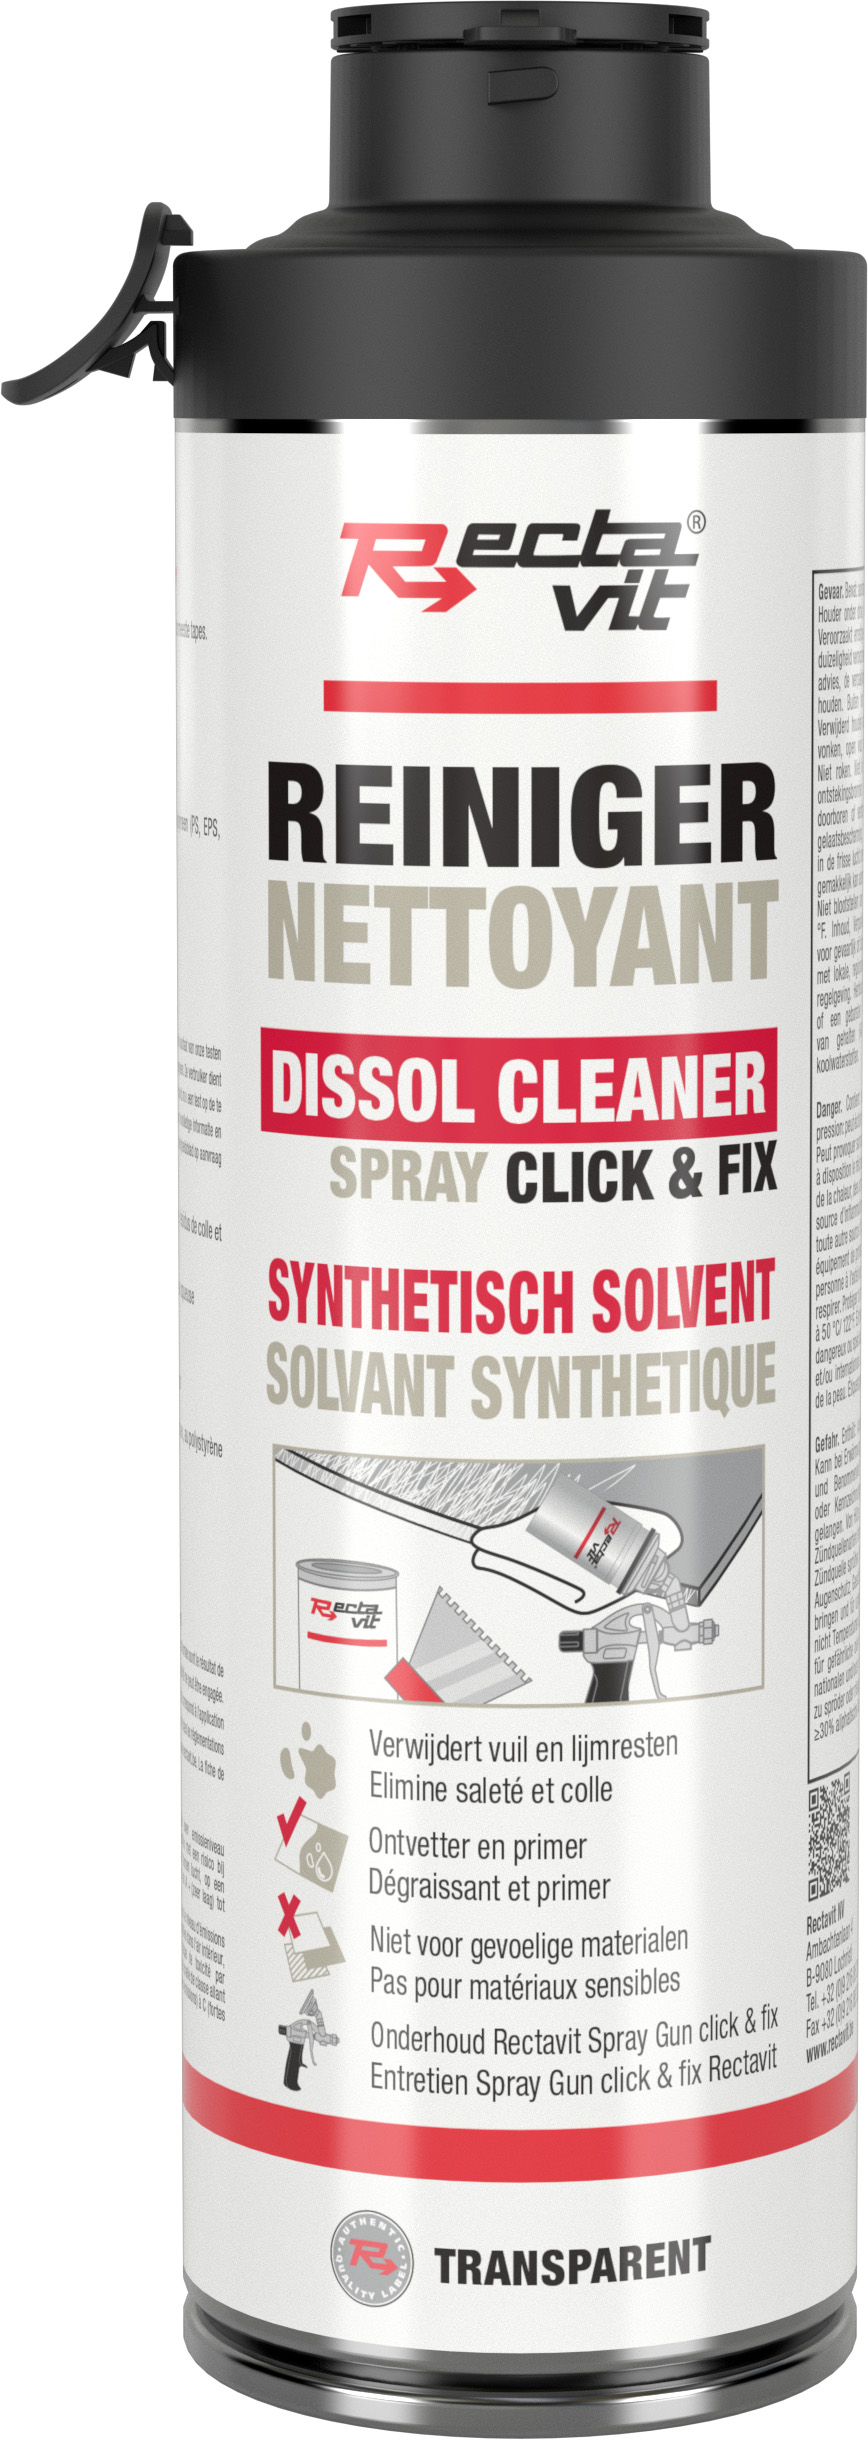 Rectavit Dissol Cleaner Click & Fix 